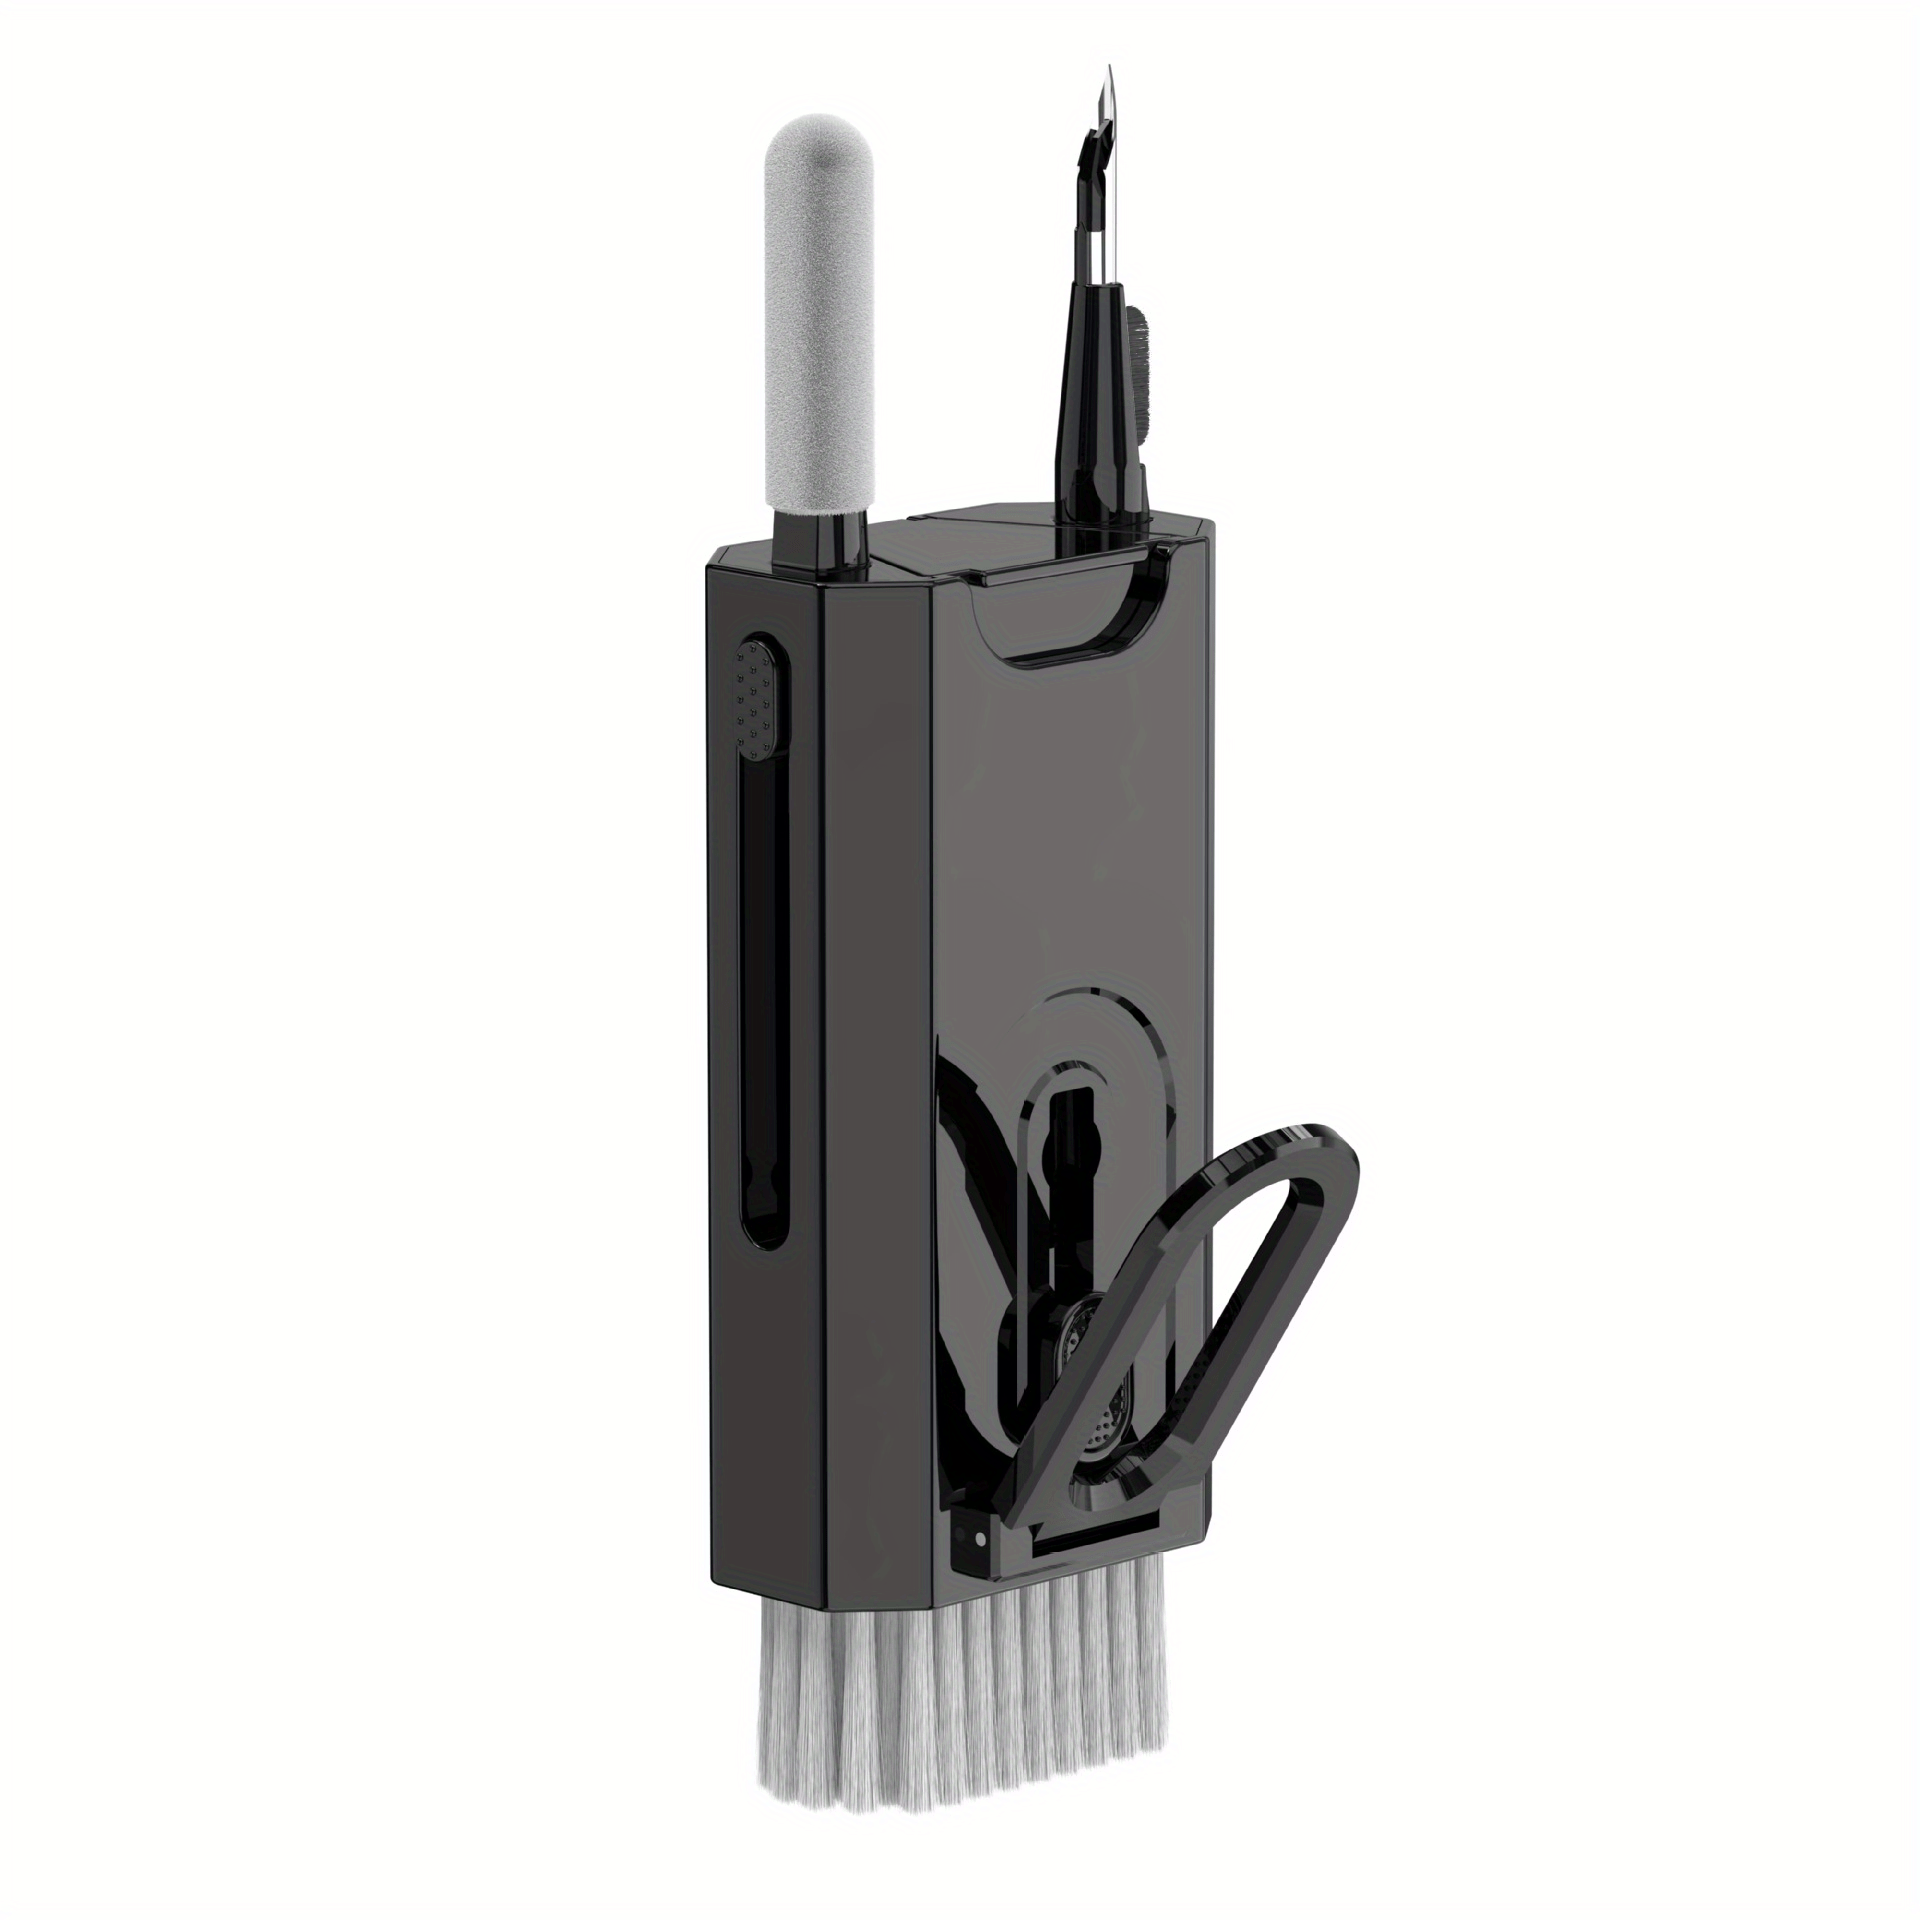 Multifunctional 20 in 1 Keyboard Camera, Cleaning Brush Kit